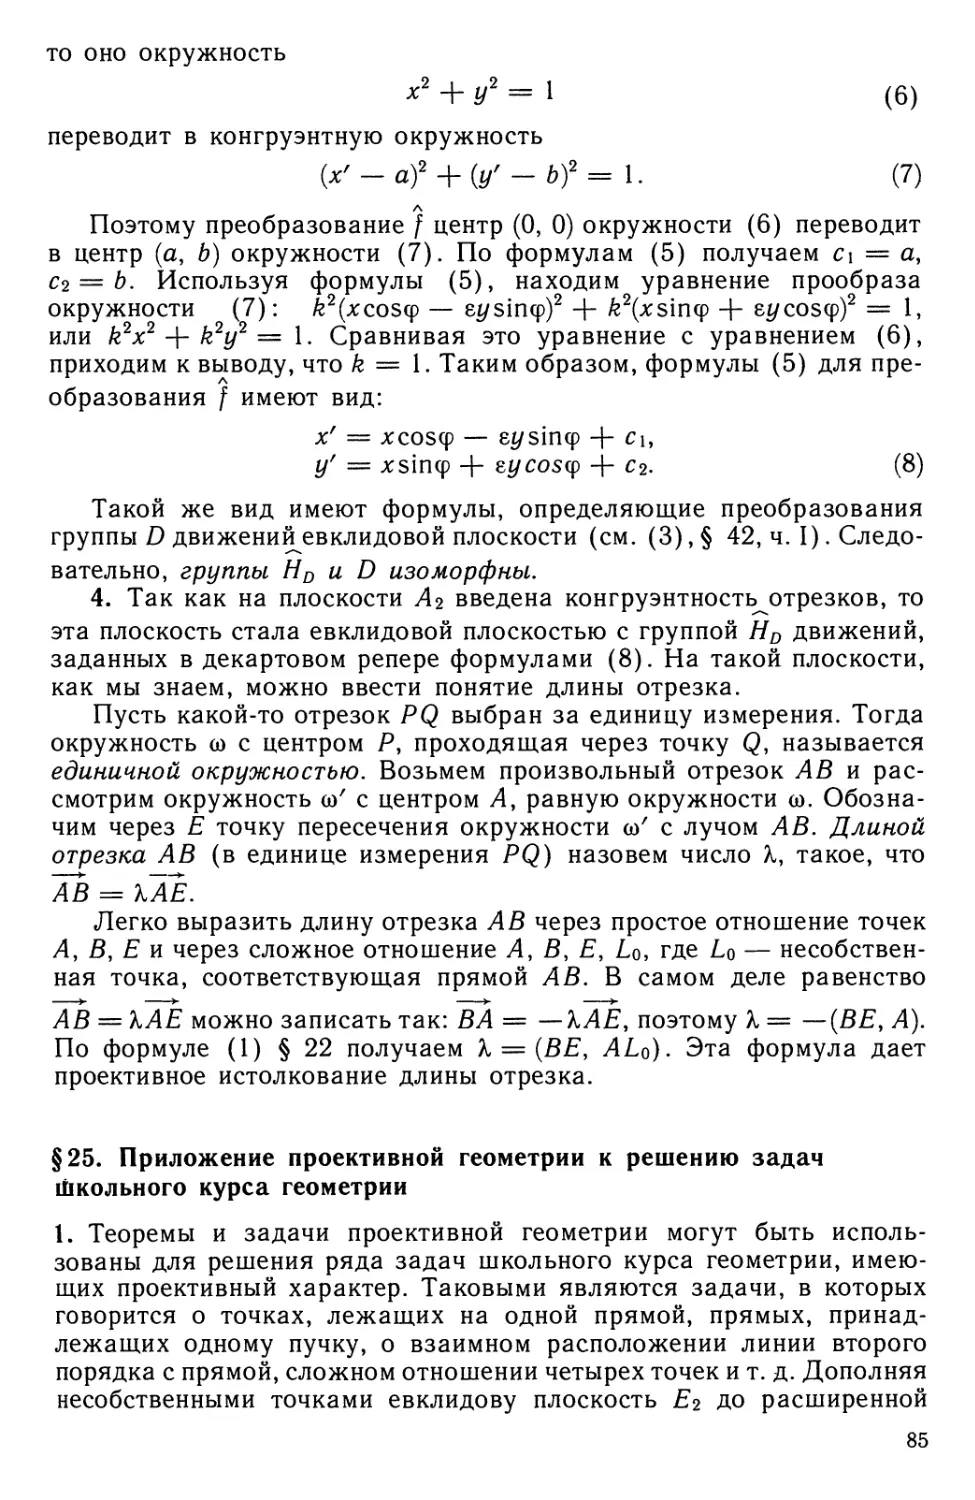 § 25. Приложение проективной геометрии к решению задач школьного курса геометрии